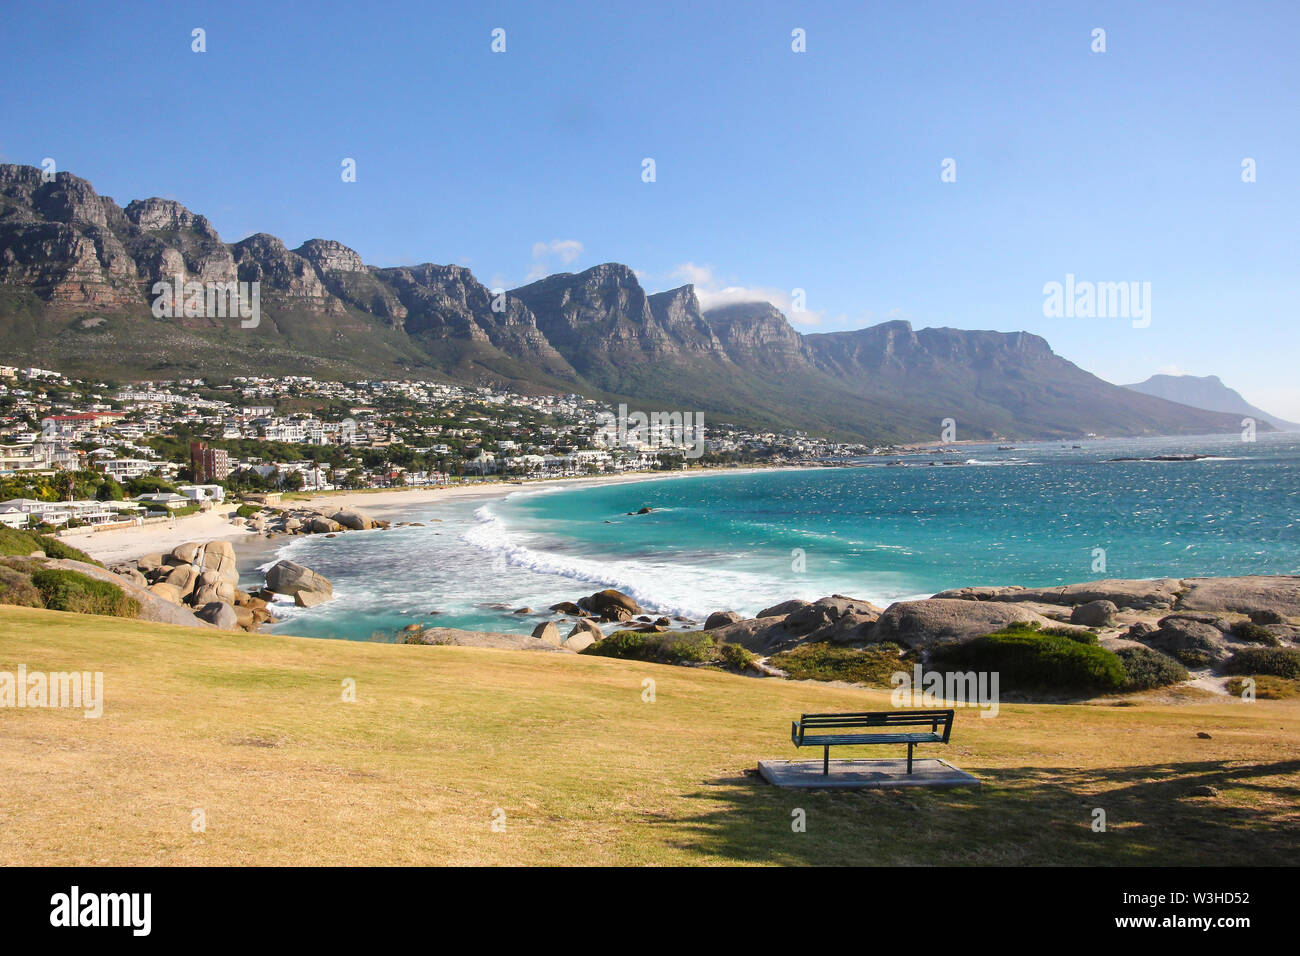 Vista del paesaggio nel corso di dodici apostolo montagne e Table Mountain National Park e Camps Bay sobborgo costiero di Cape Town, Sud Africa Foto Stock